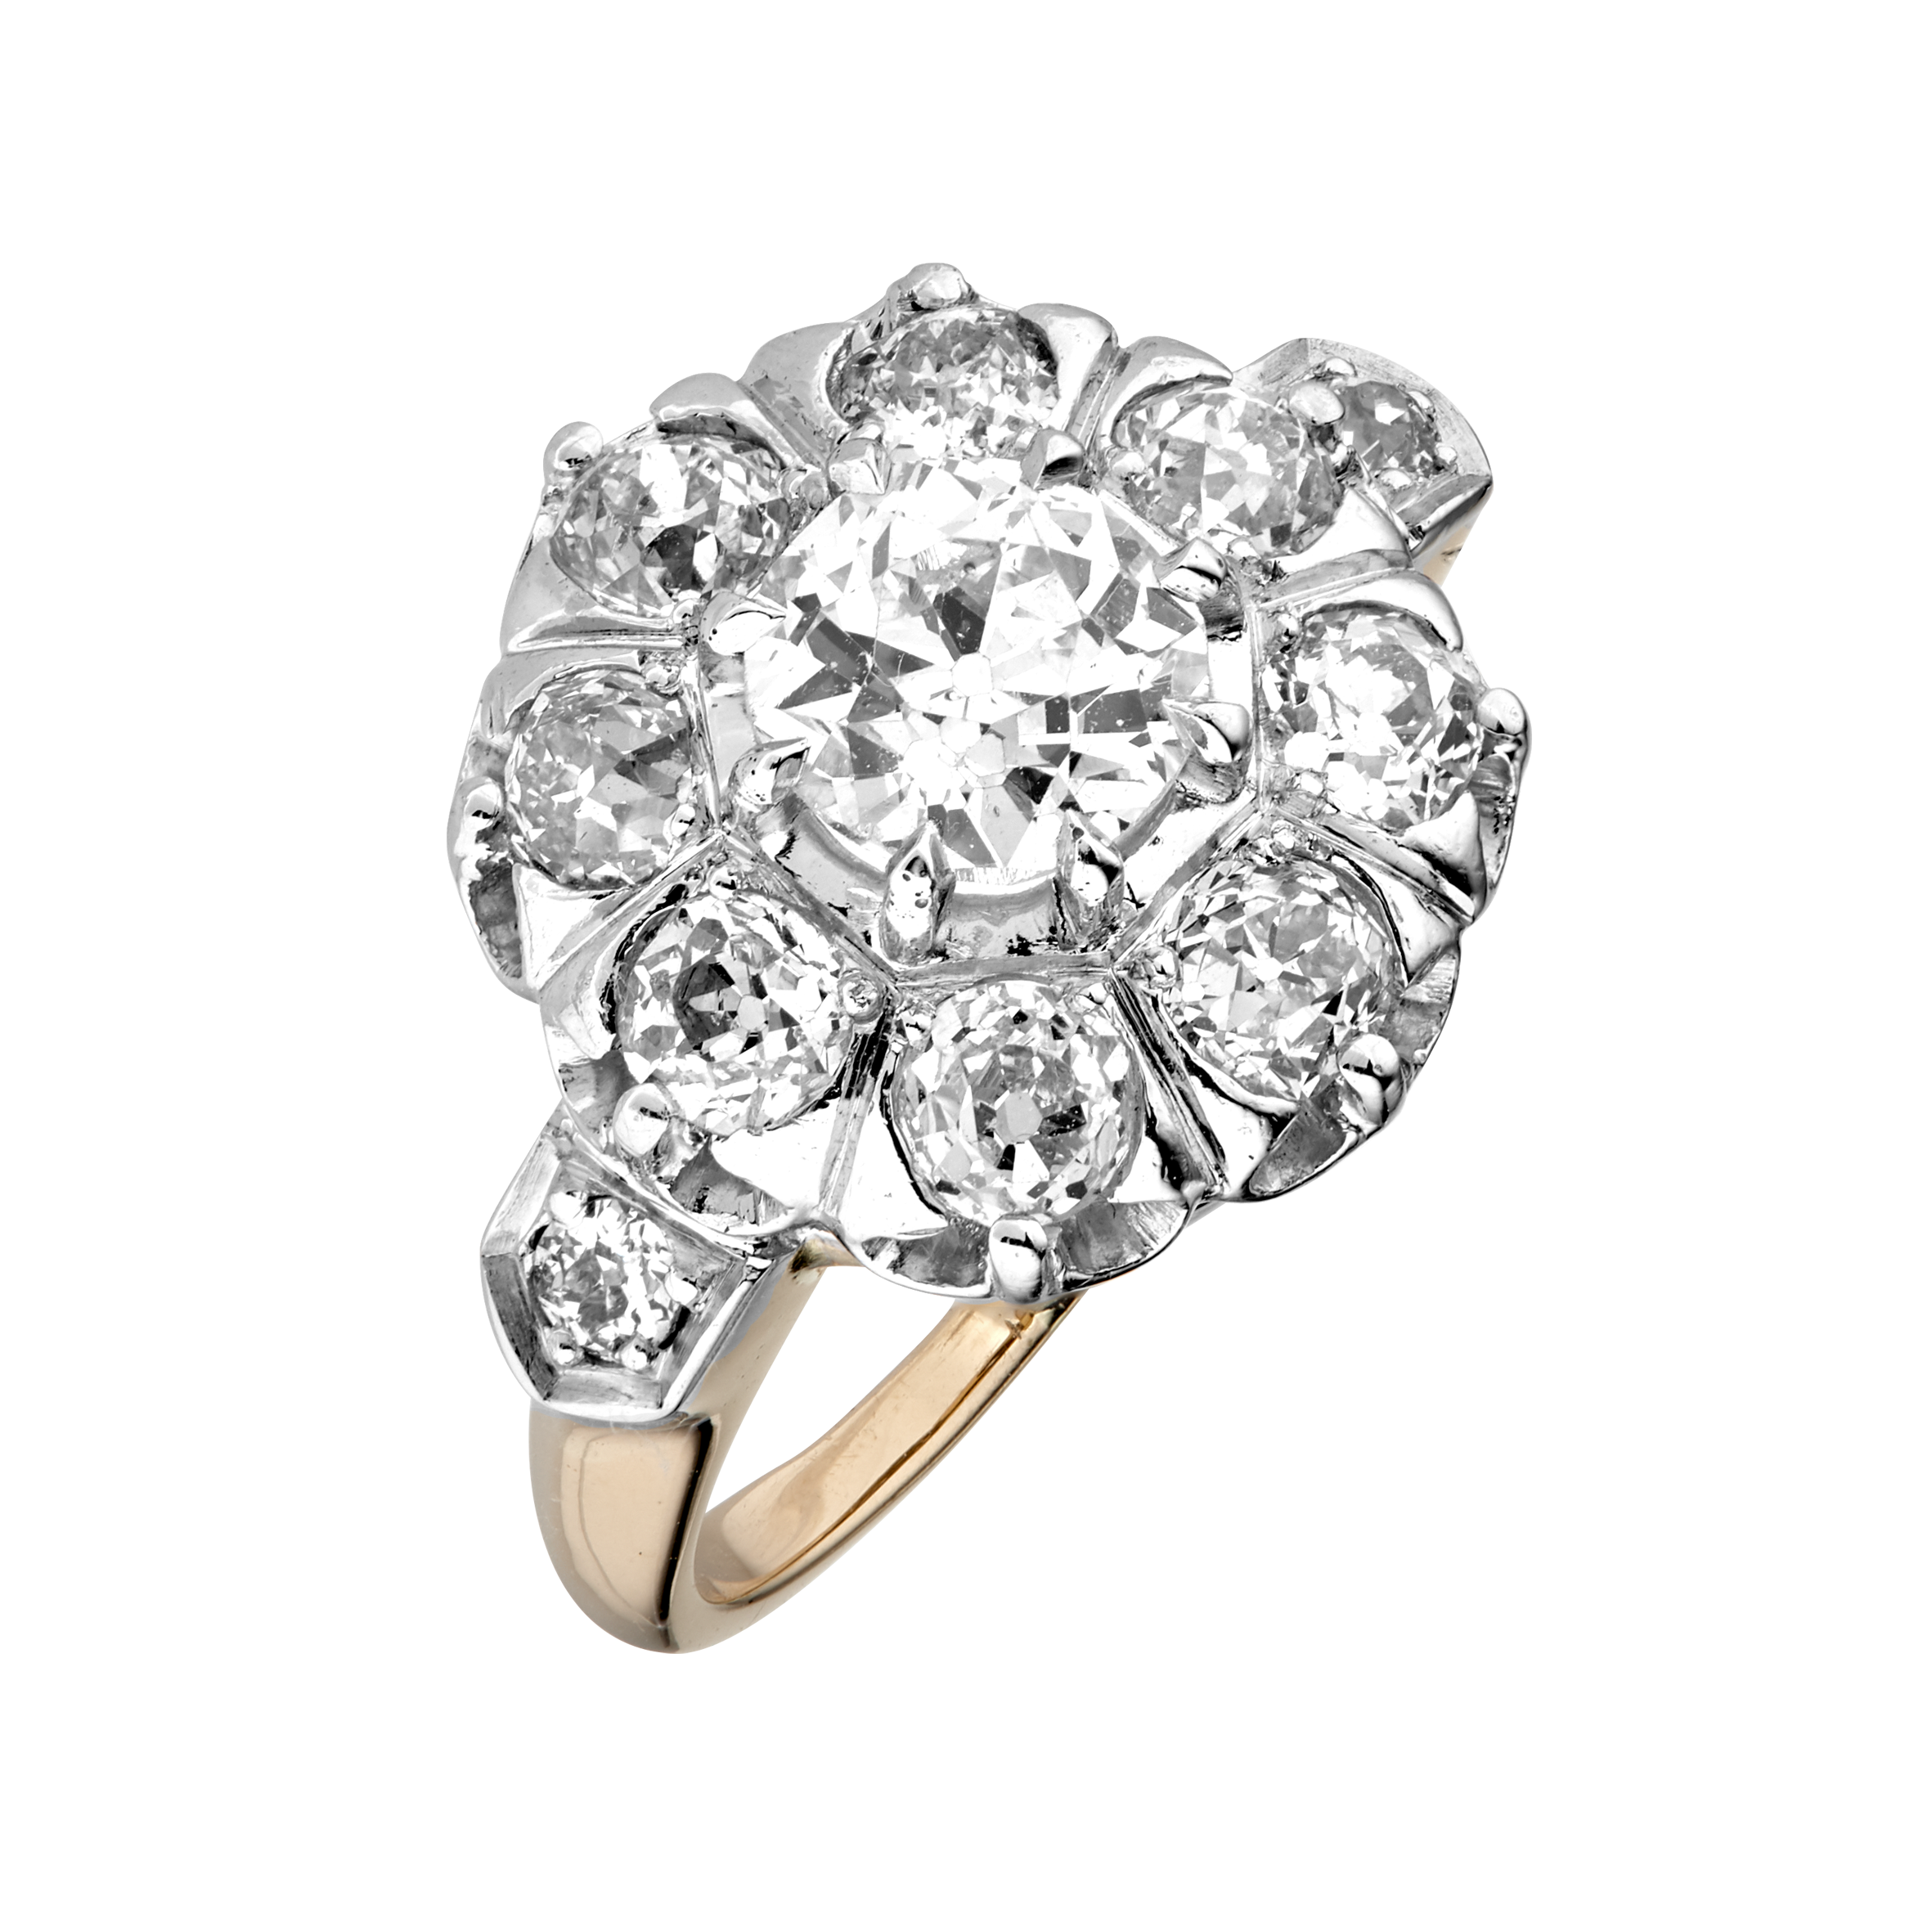 Bague "Pompadour" diamants fin XIXème Gerphagnon